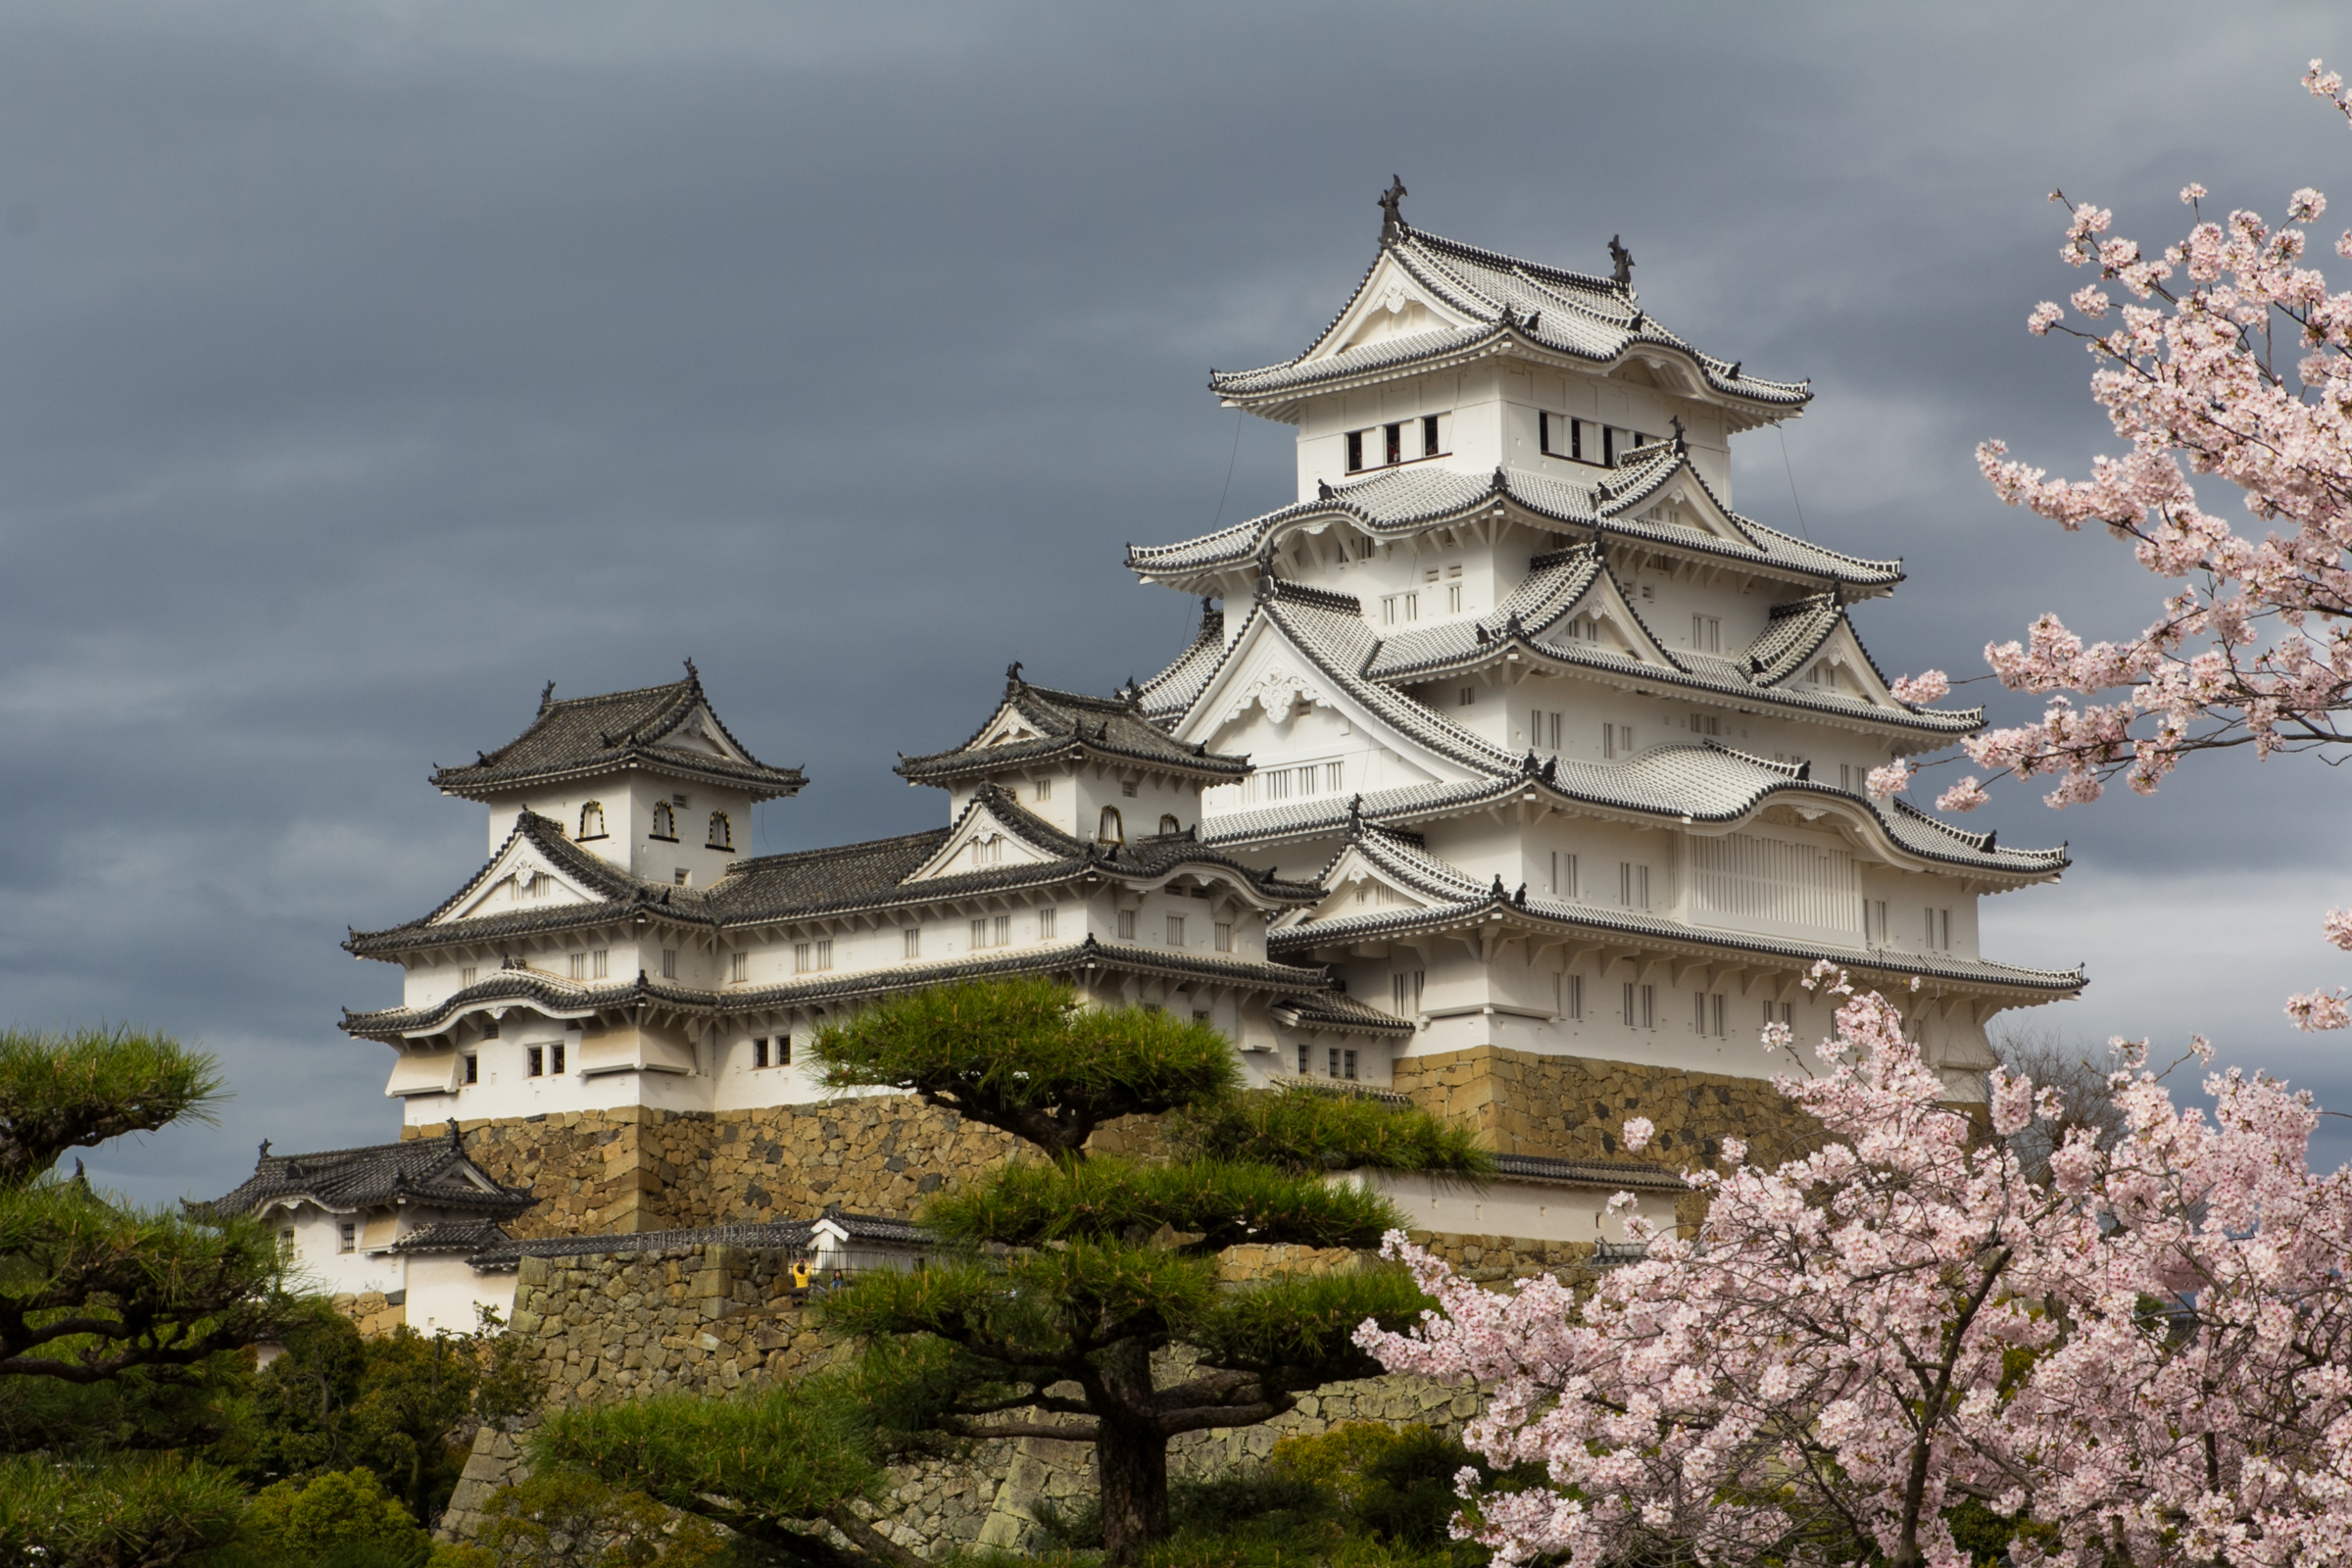 File:Japan 040416 Himeji Castle 005.jpg - Wikimedia Commons